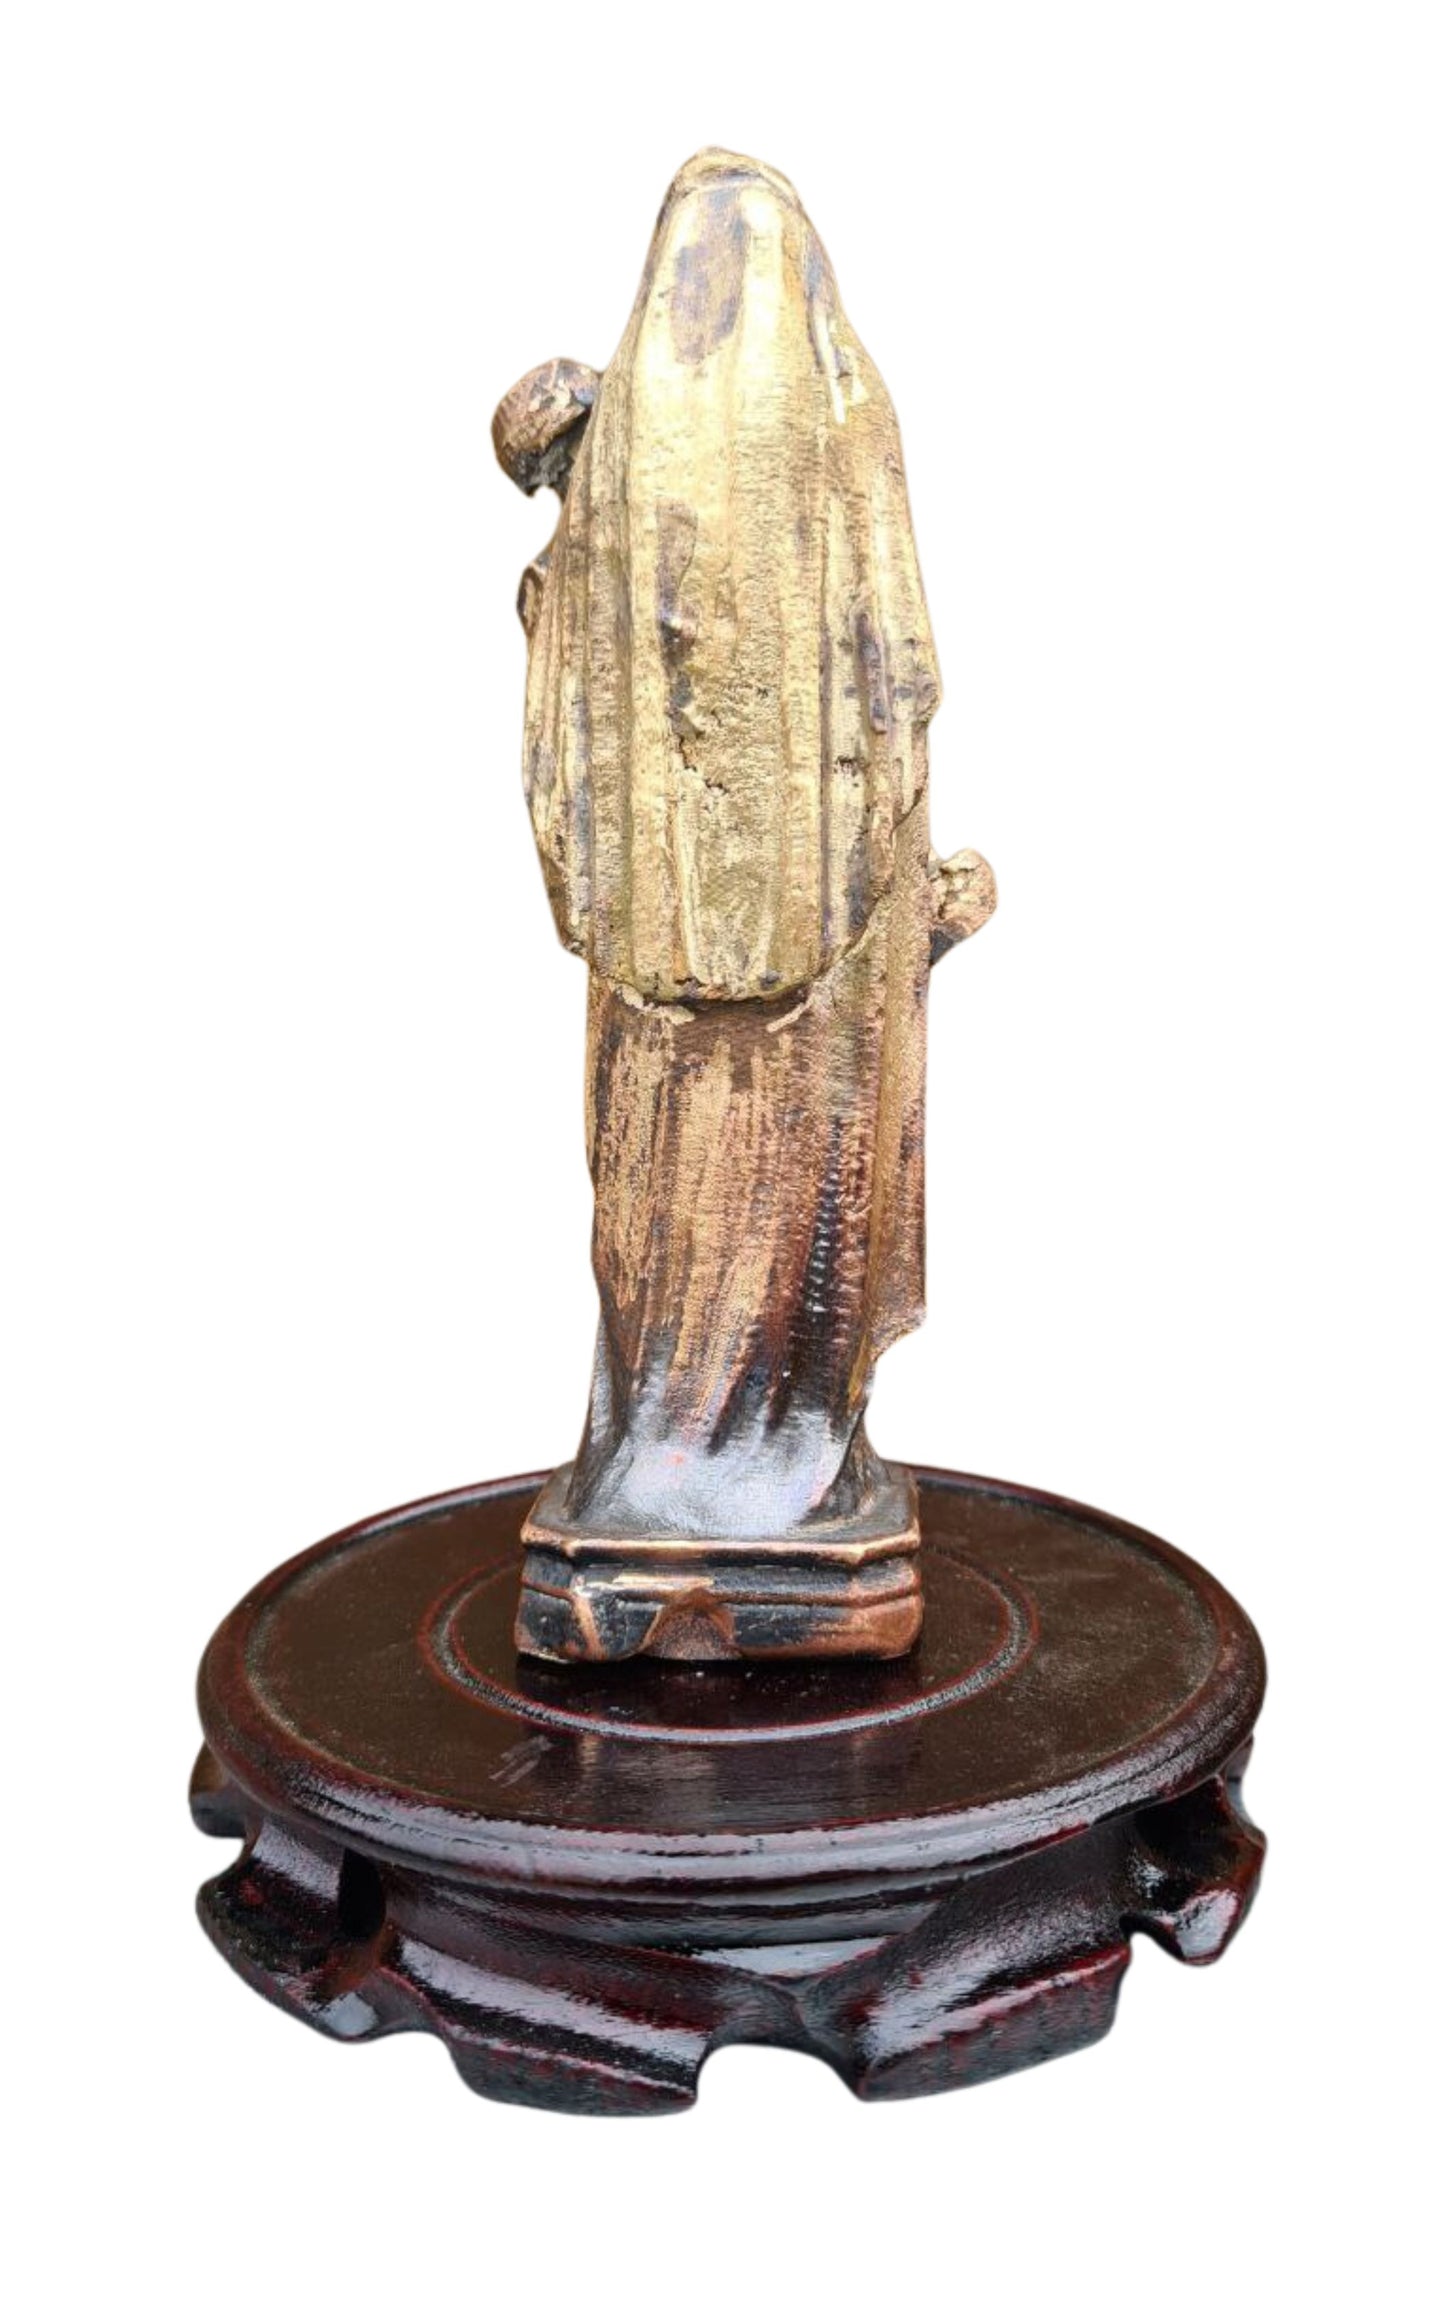 セント・ジャベリン - 実弾から作られた鋳造像 (17 cm)